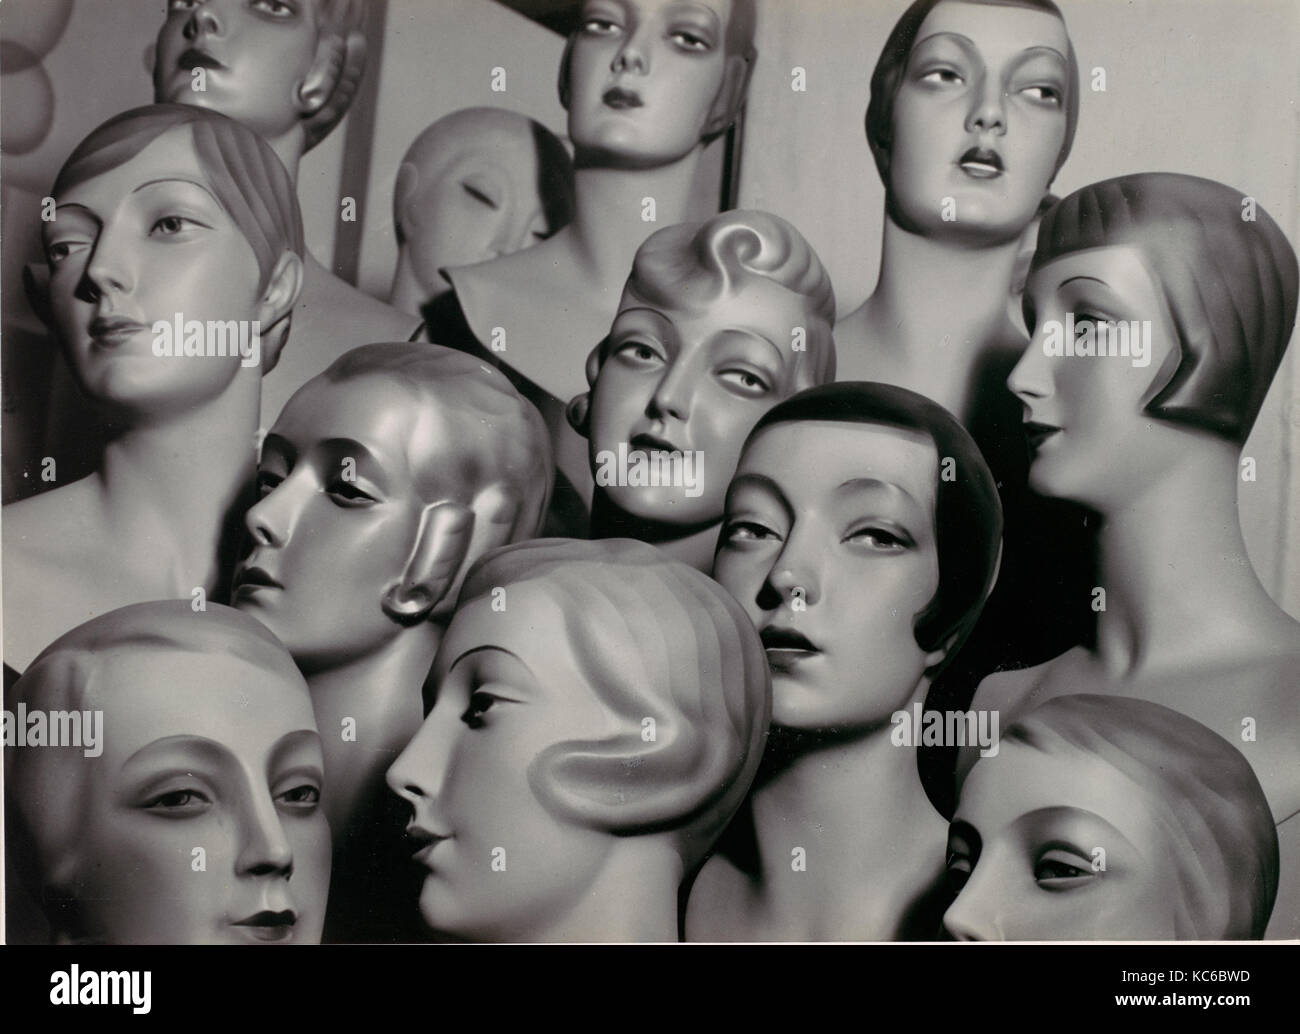 L'Arrangement de 12 Female Mannequin Chefs, chacun ayant son propre physionomie et période Coiffure, Peter Weller, 1920-1930 Banque D'Images